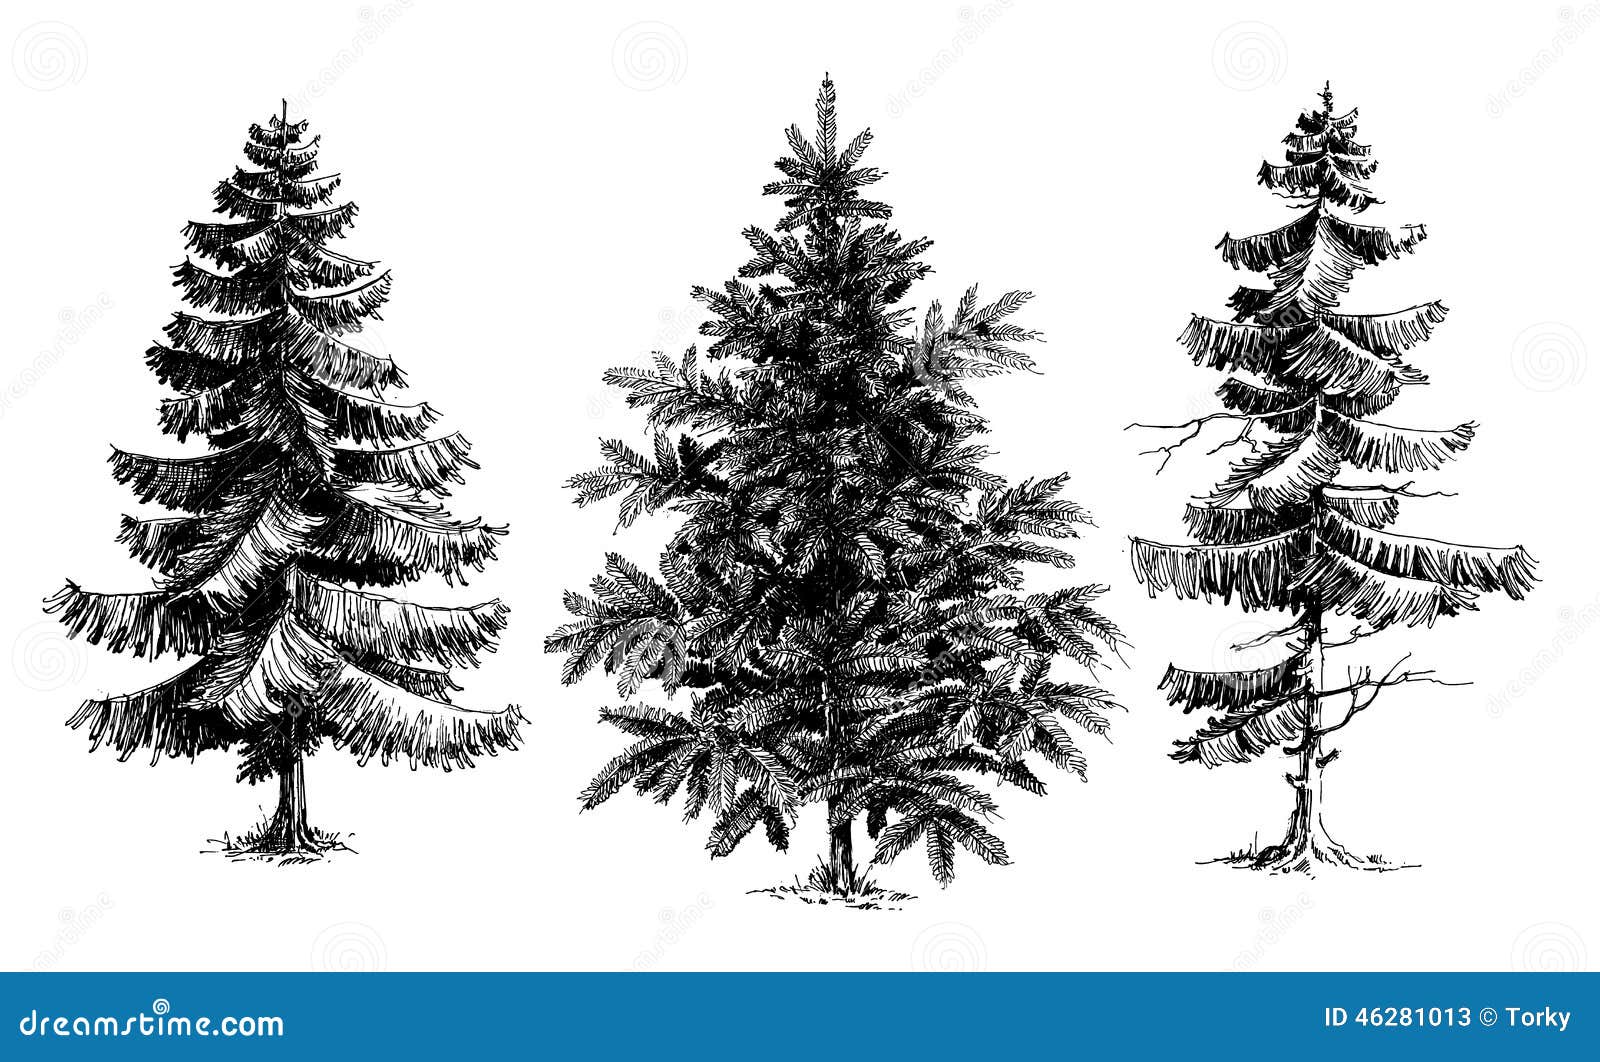 Page 2  Pine Tree Drawing Images  Free Download on Freepik